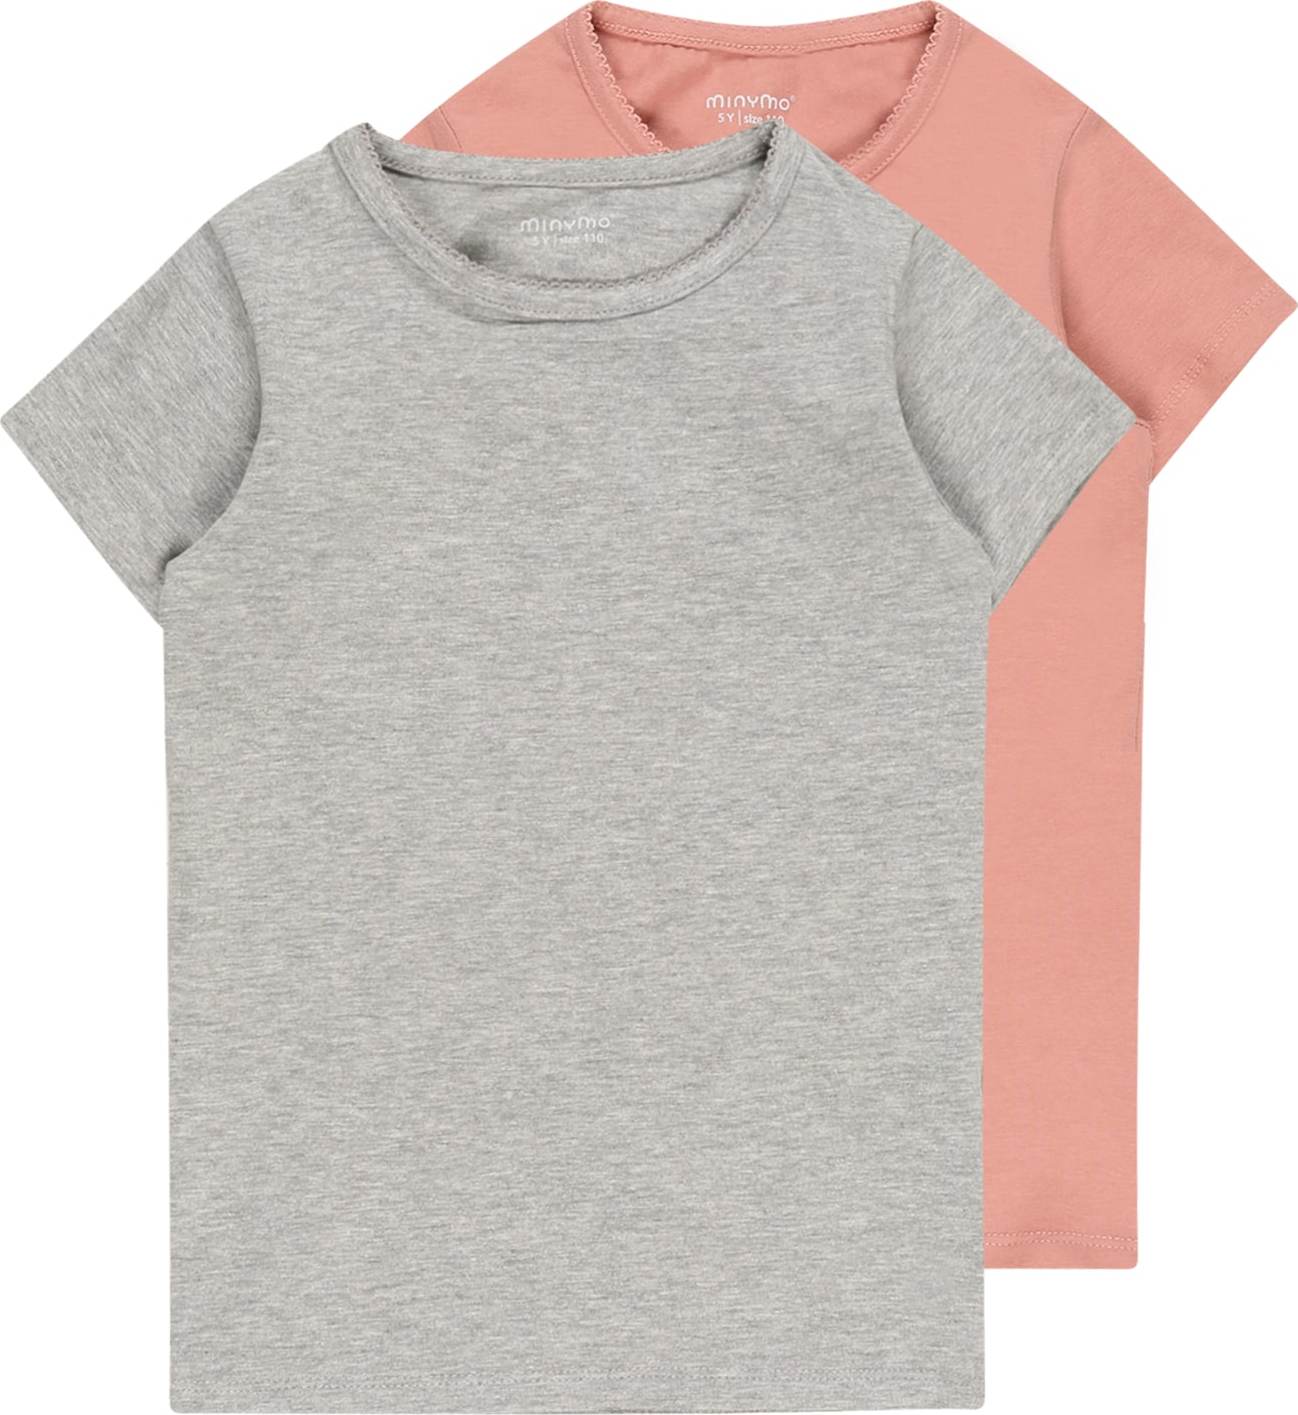 Tričko MINYMO šedý melír / růžová